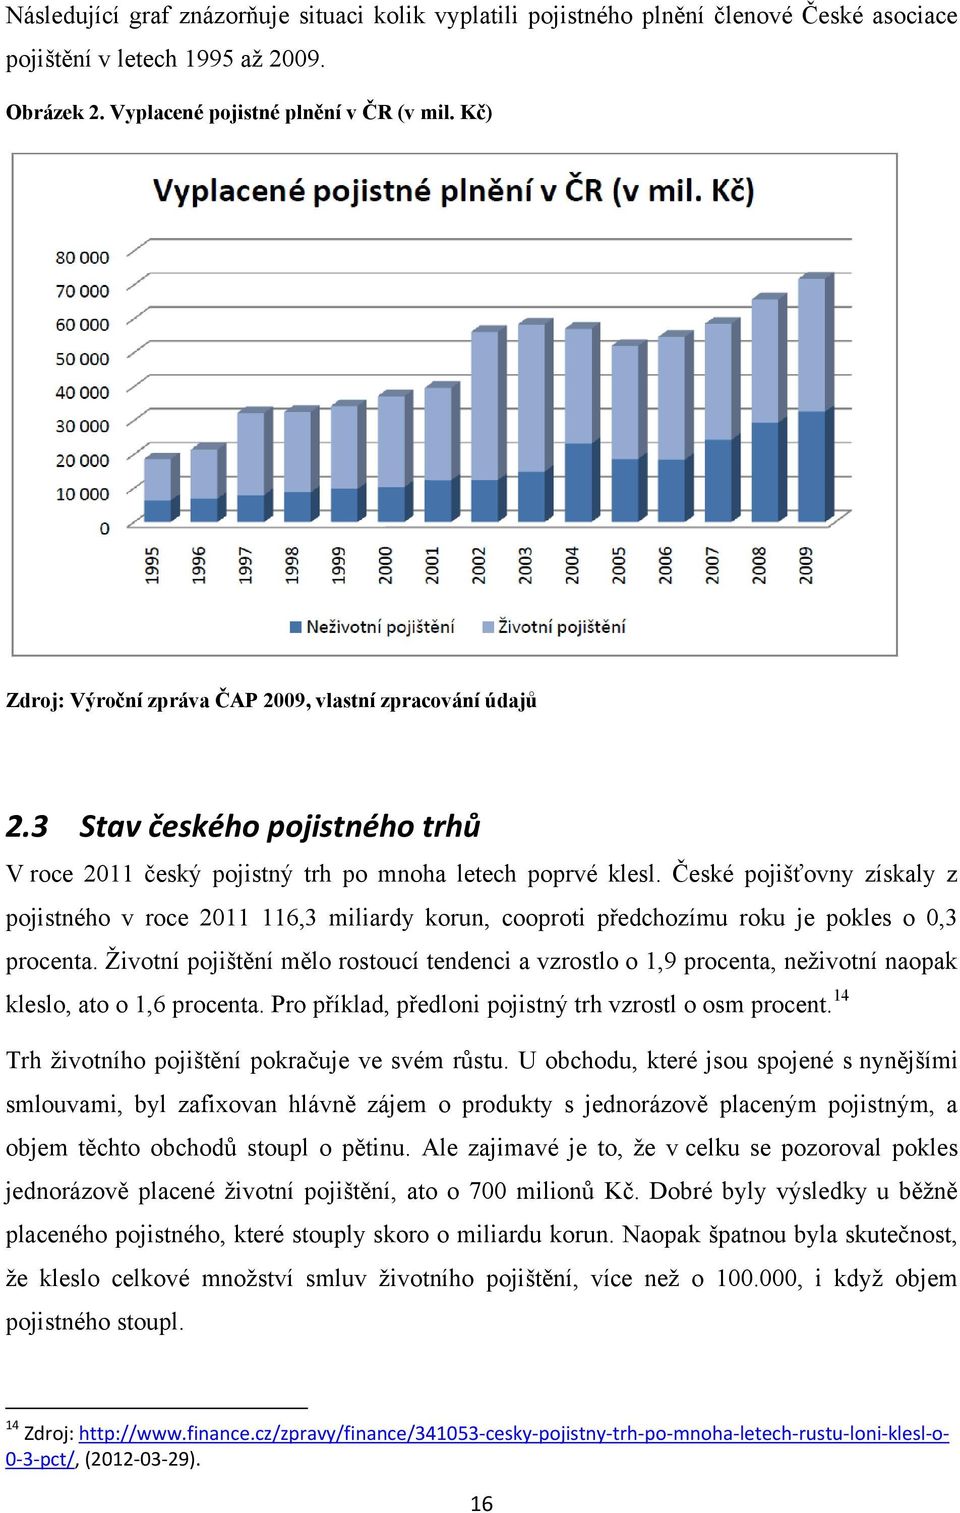 České pojišťovny získaly z pojistného v roce 2011 116,3 miliardy korun, cooproti předchozímu roku je pokles o 0,3 procenta.